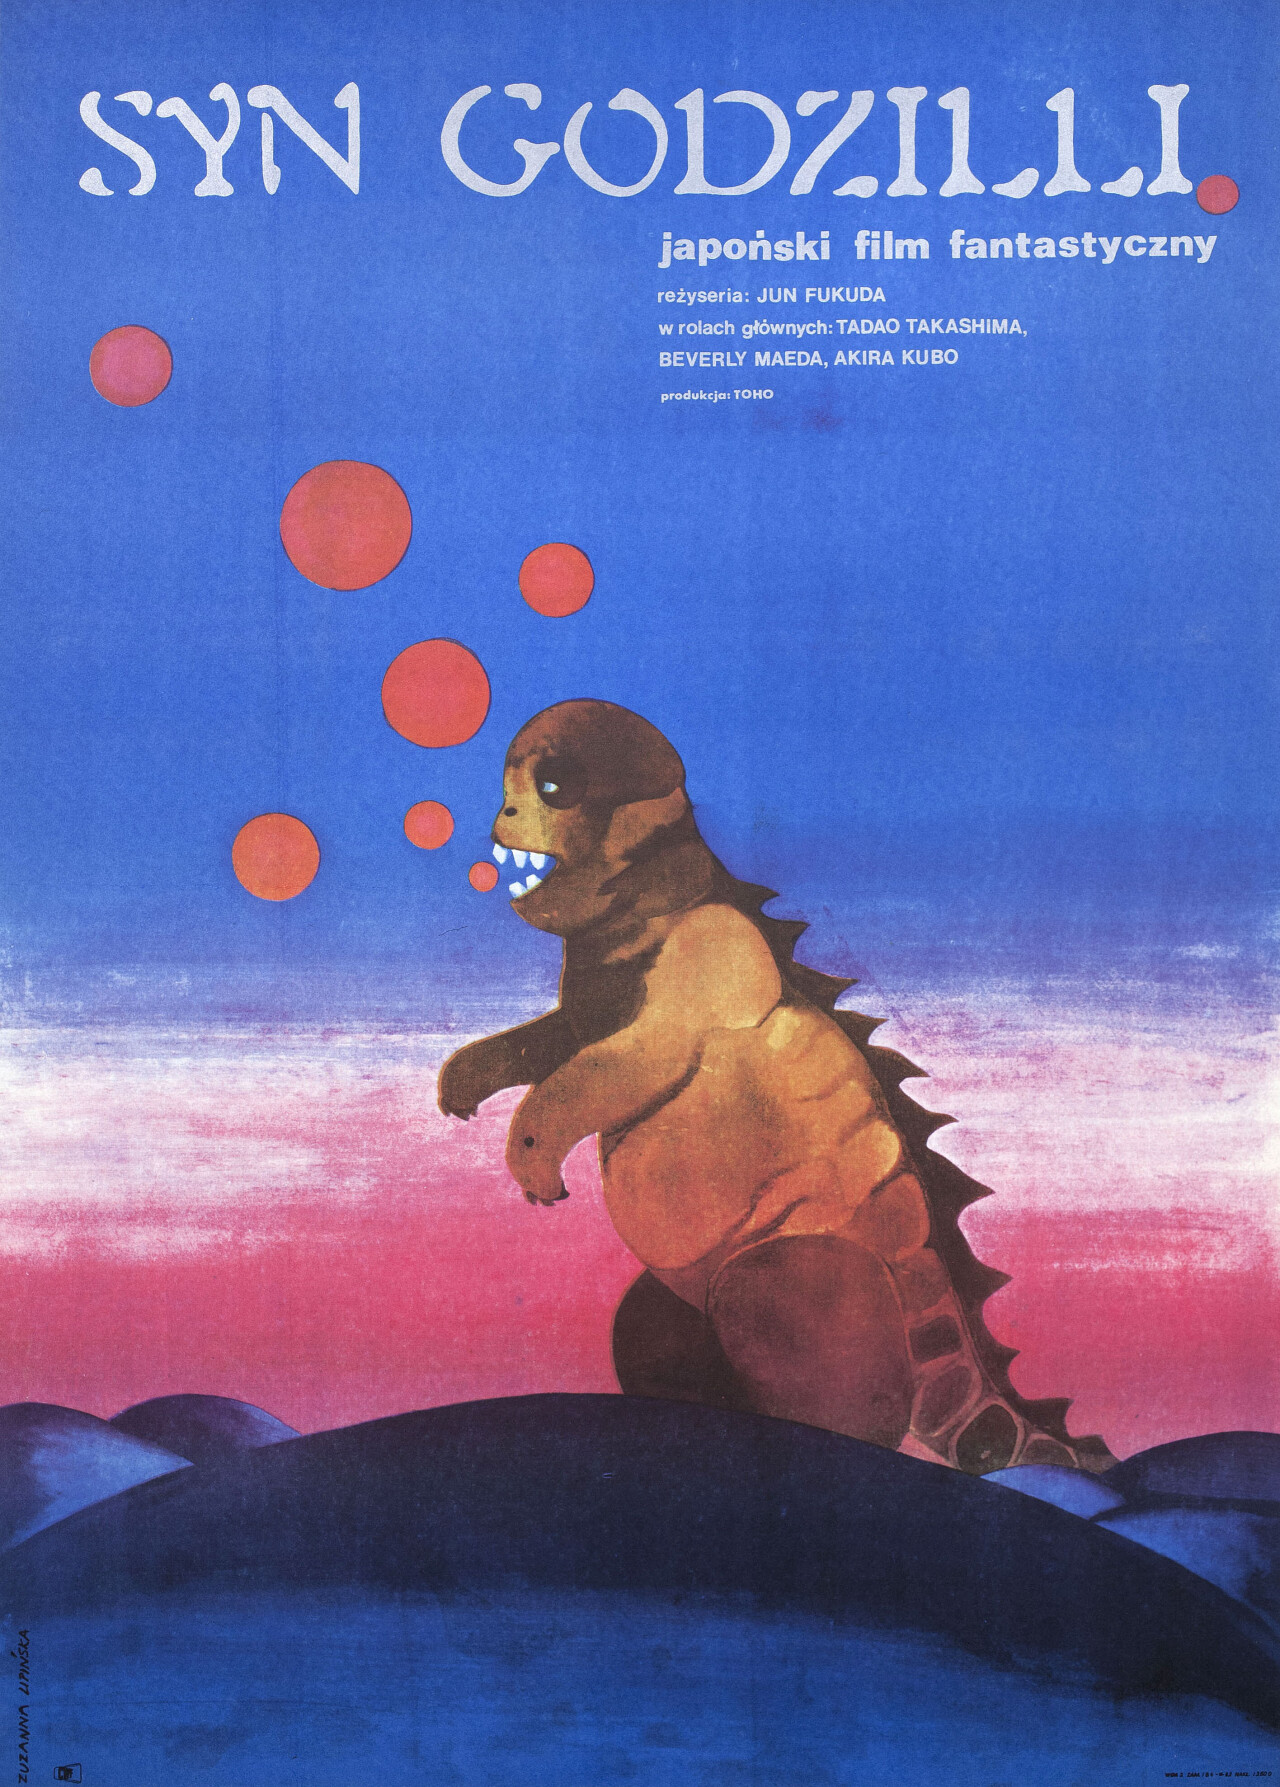 Сын Годзиллы (Son of Godzilla, 1967), режиссёр Джун Фукуда, польский постер к фильму (графический дизайн, 1966 год)